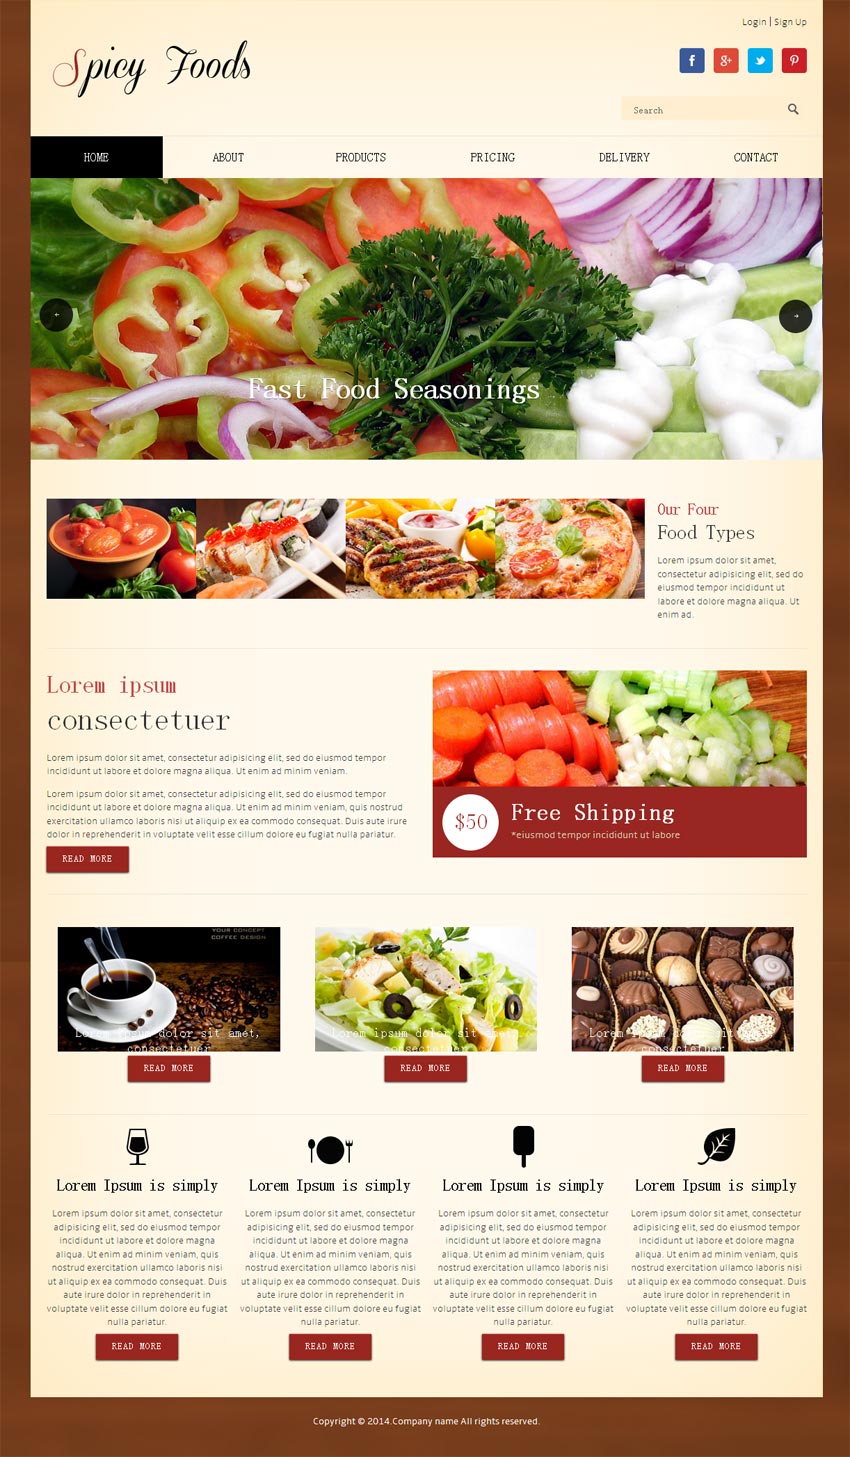 国外响应式设计西餐美食网站模板html整站下载